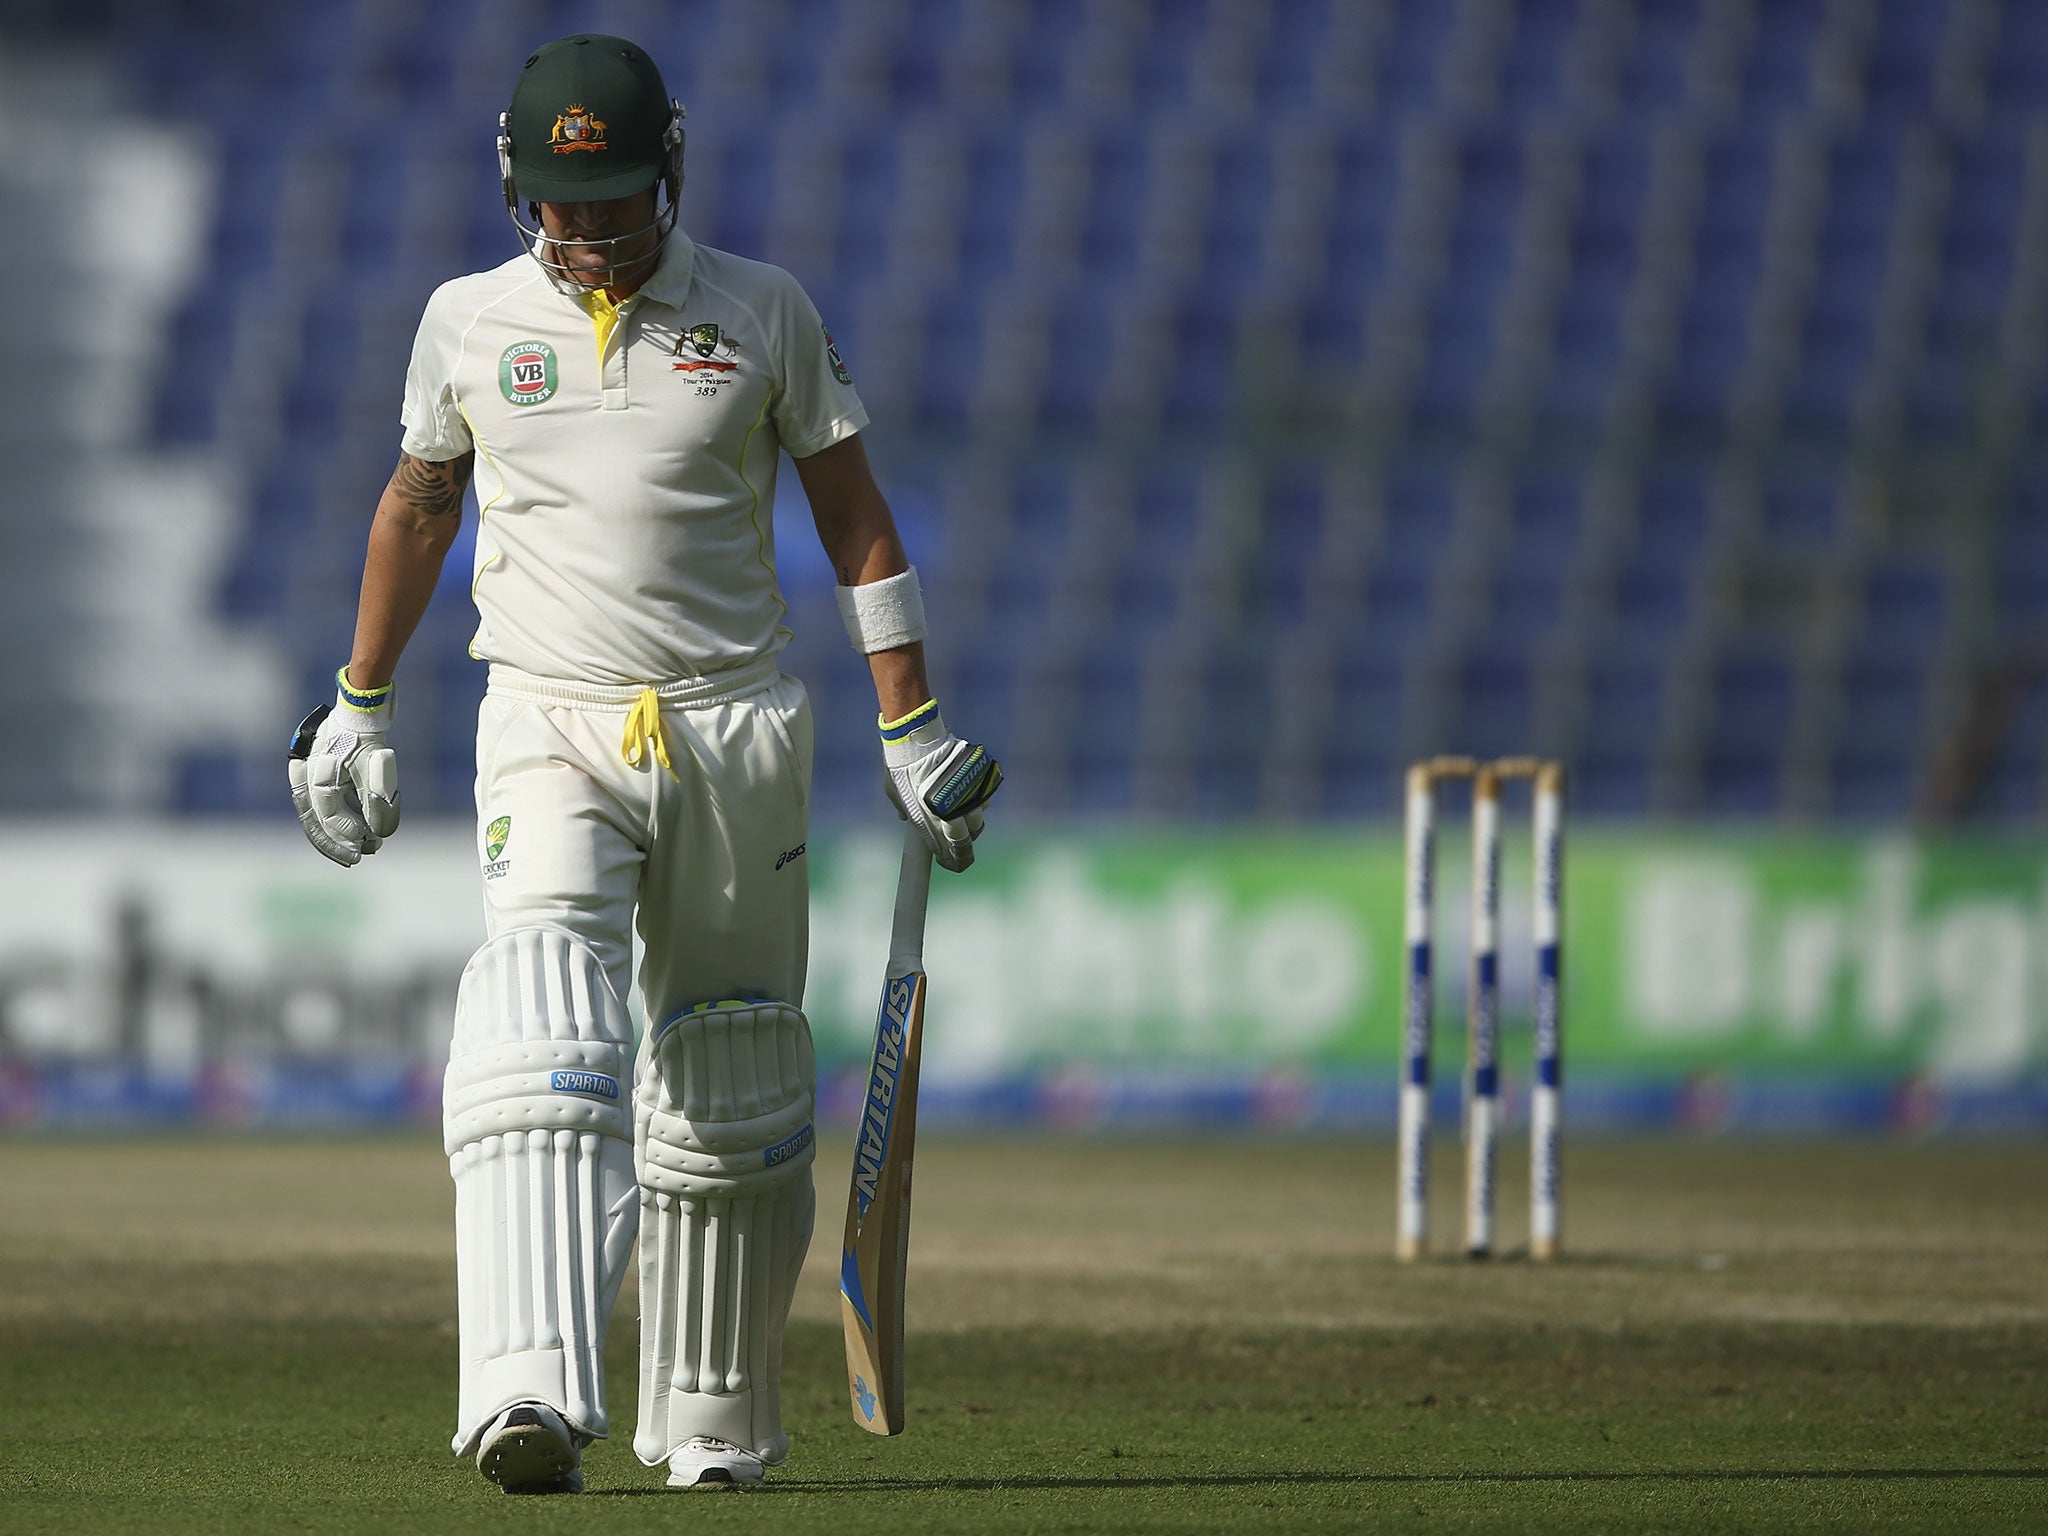 Australia captain Michael Clarke scored just 57 runs in four innings